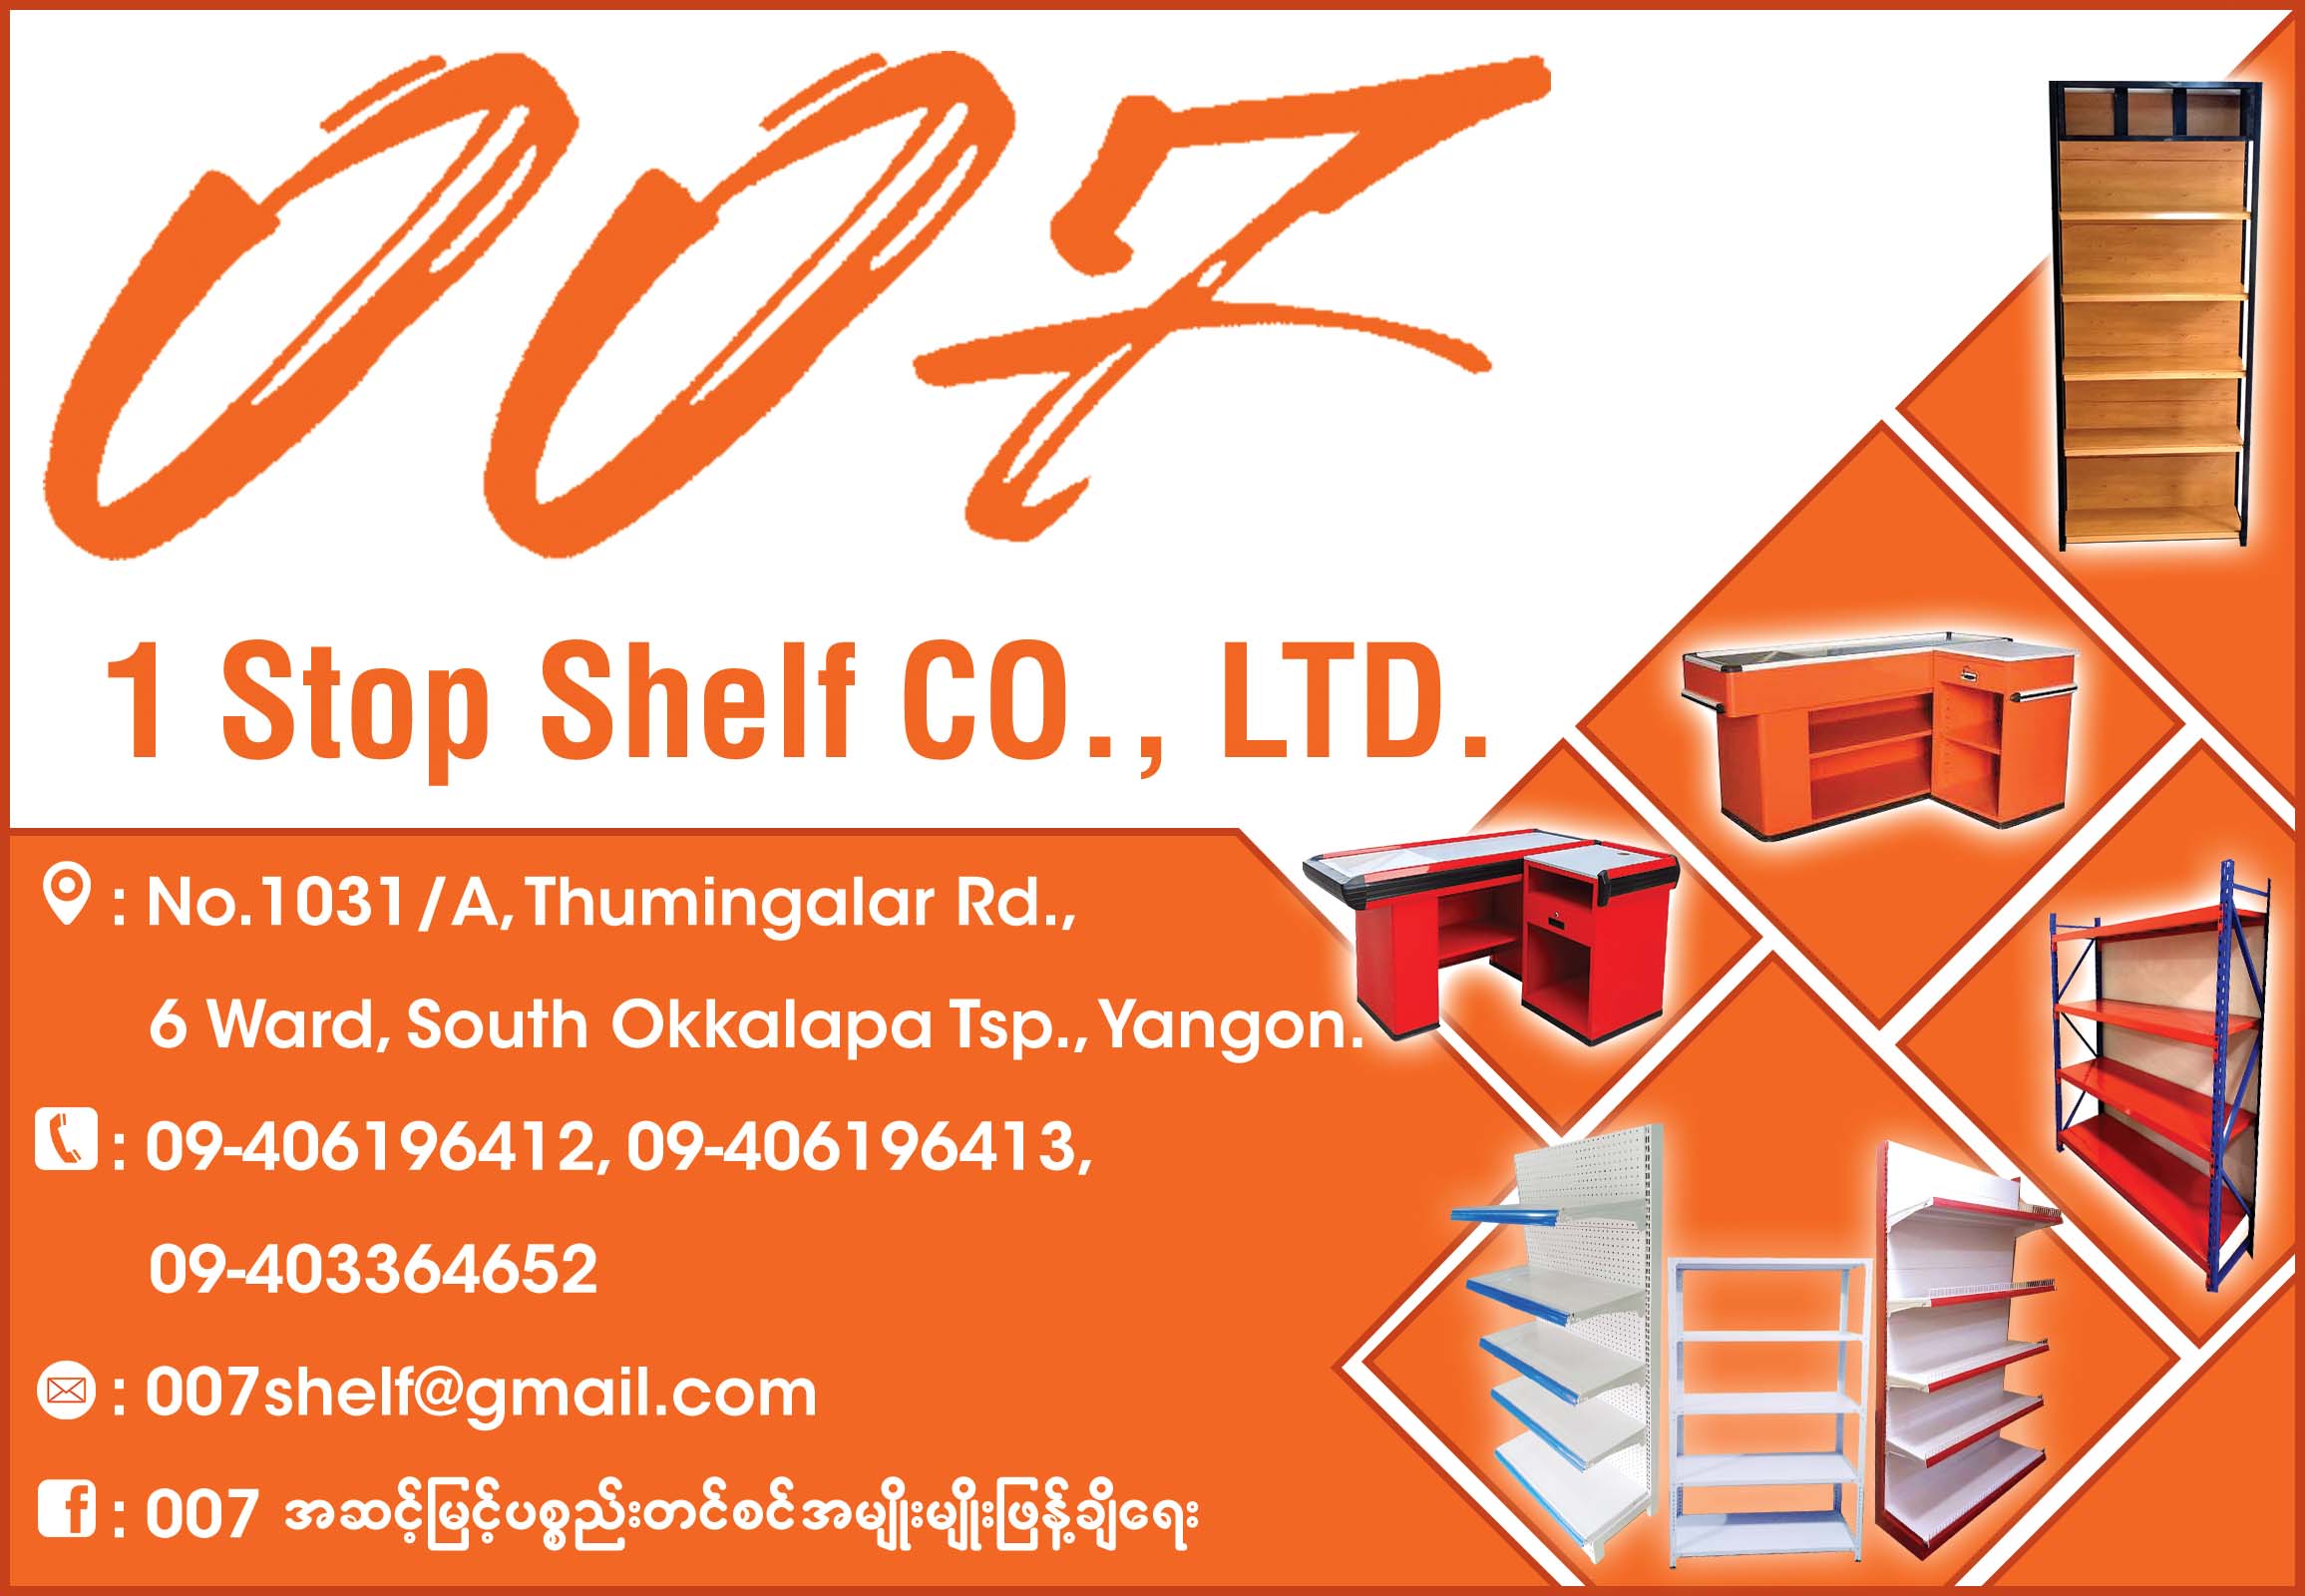 007 1 Stop Shelf Co., Ltd.